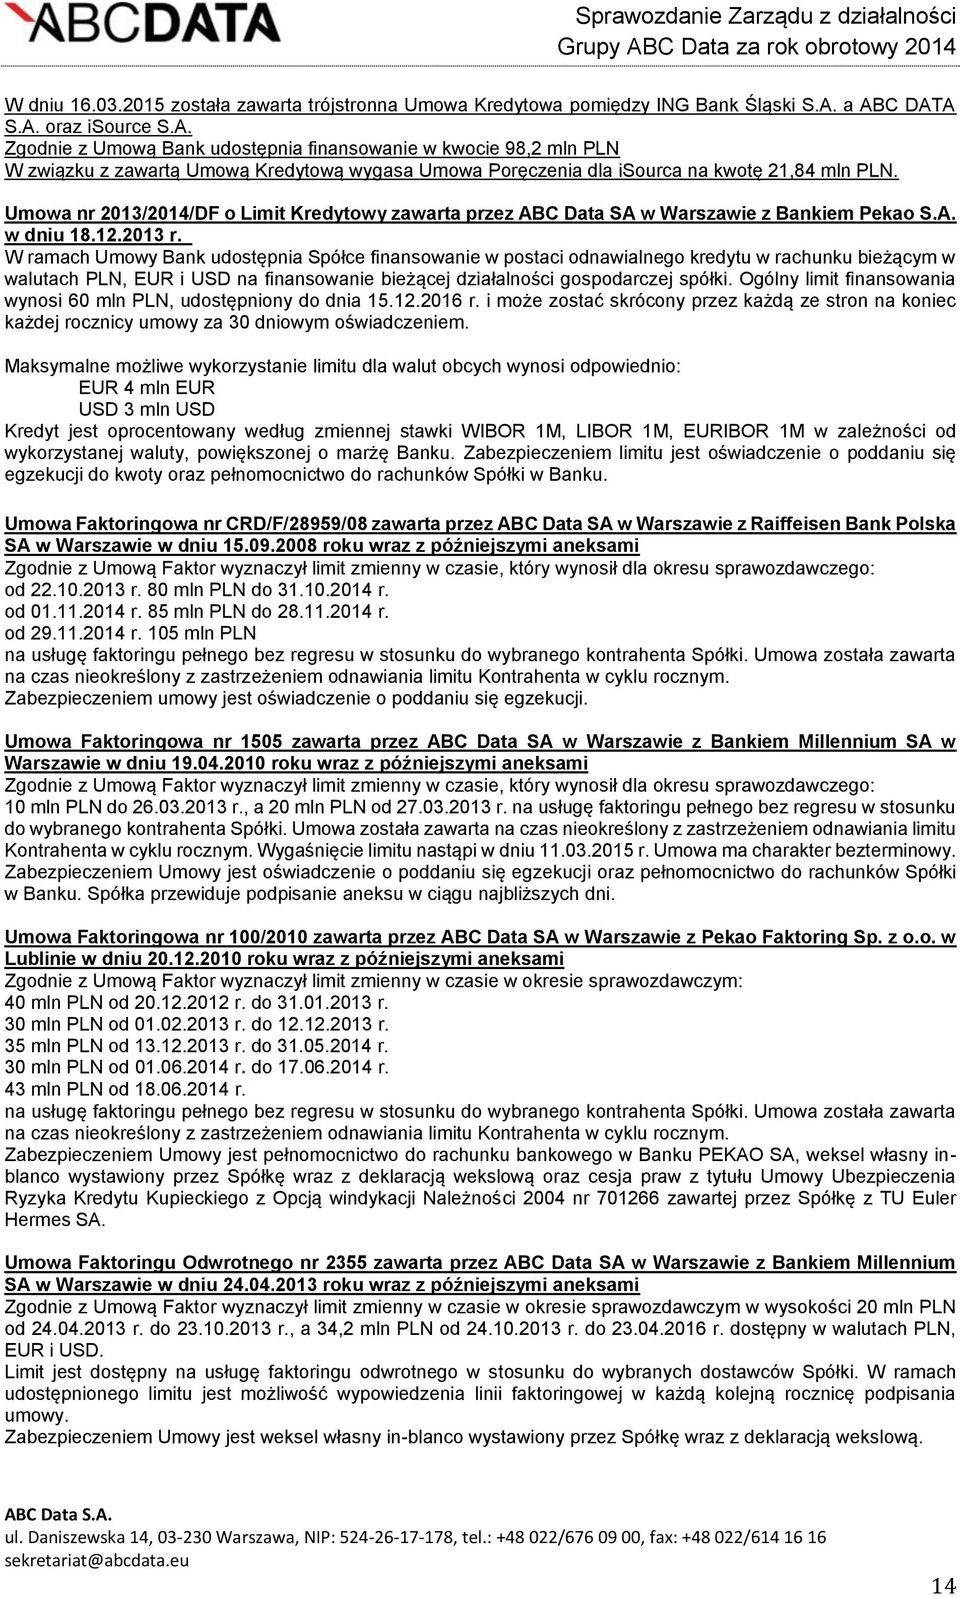 Umowa nr 2013/2014/DF o Limit Kredytowy zawarta przez ABC Data SA w Warszawie z Bankiem Pekao S.A. w dniu 18.12.2013 r.